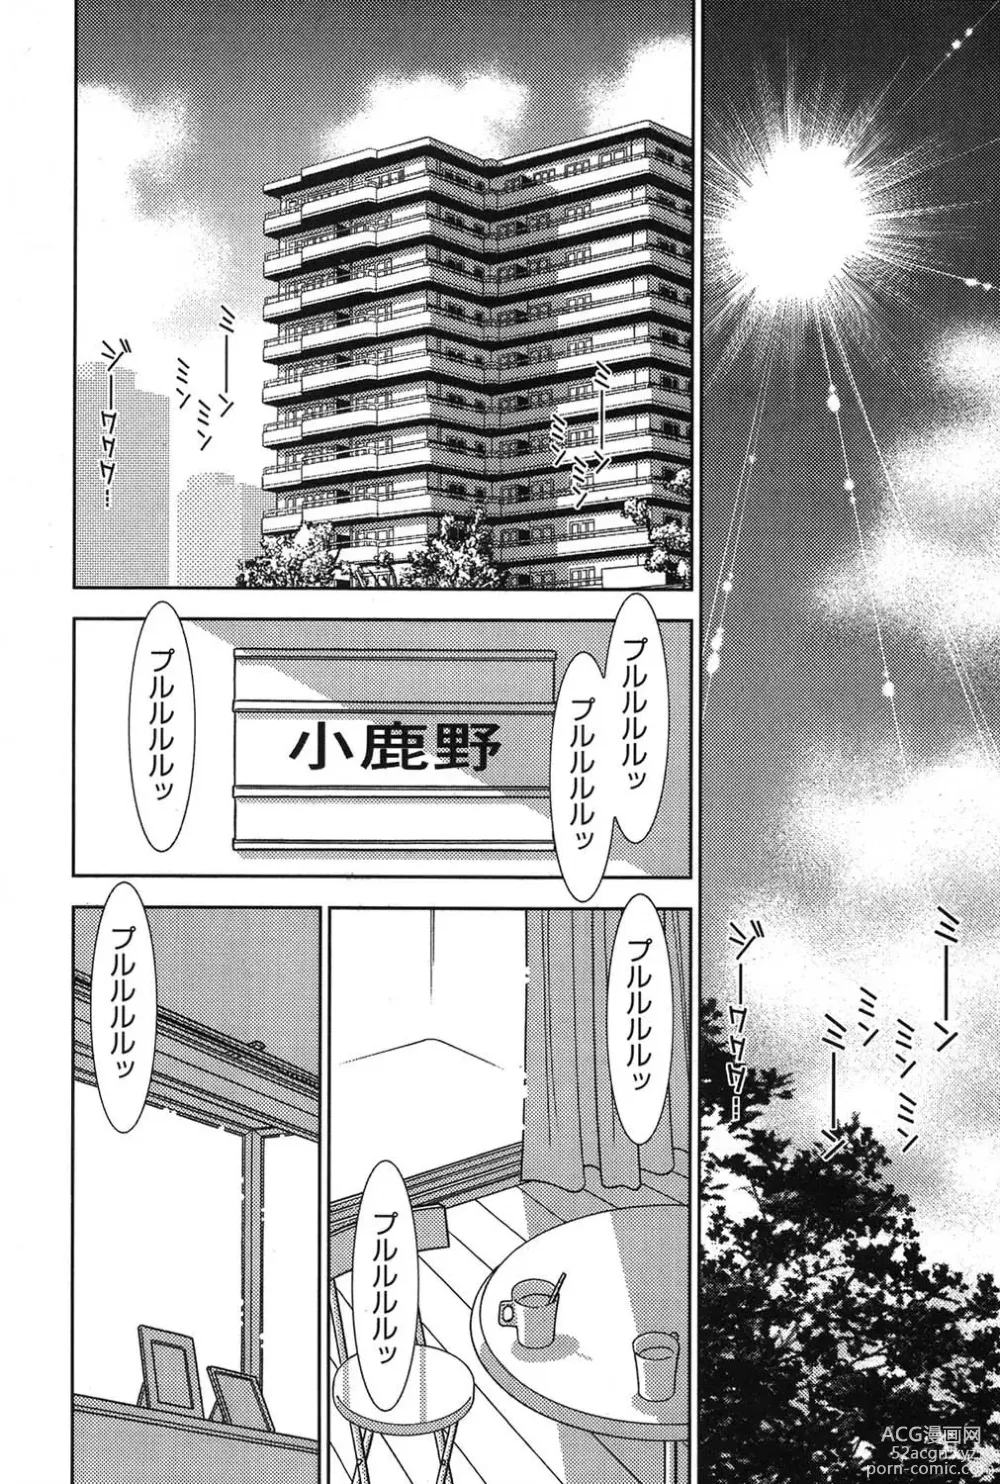 Page 231 of manga Bambina Oiroke  Battle  Hen